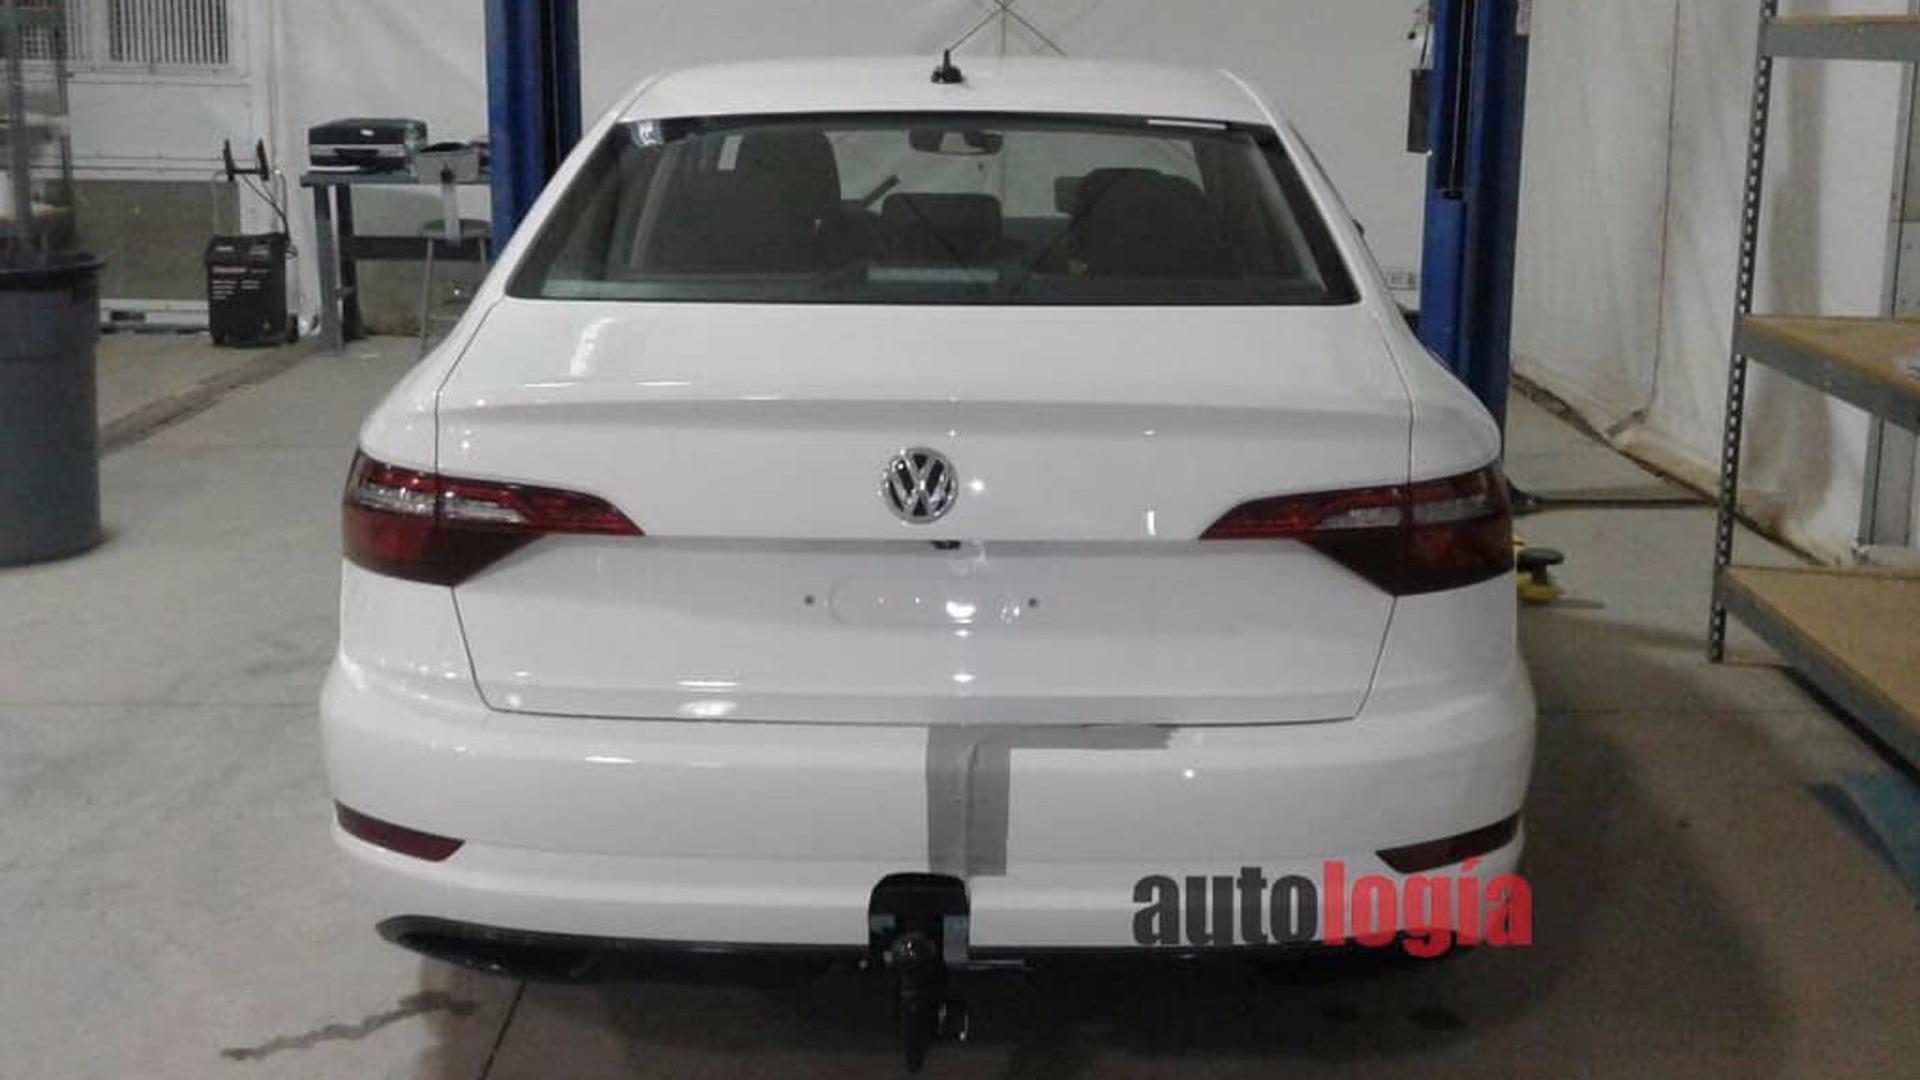 2018 Volkswagen Jetta kamuflajsız olarak kameralara yakalandı